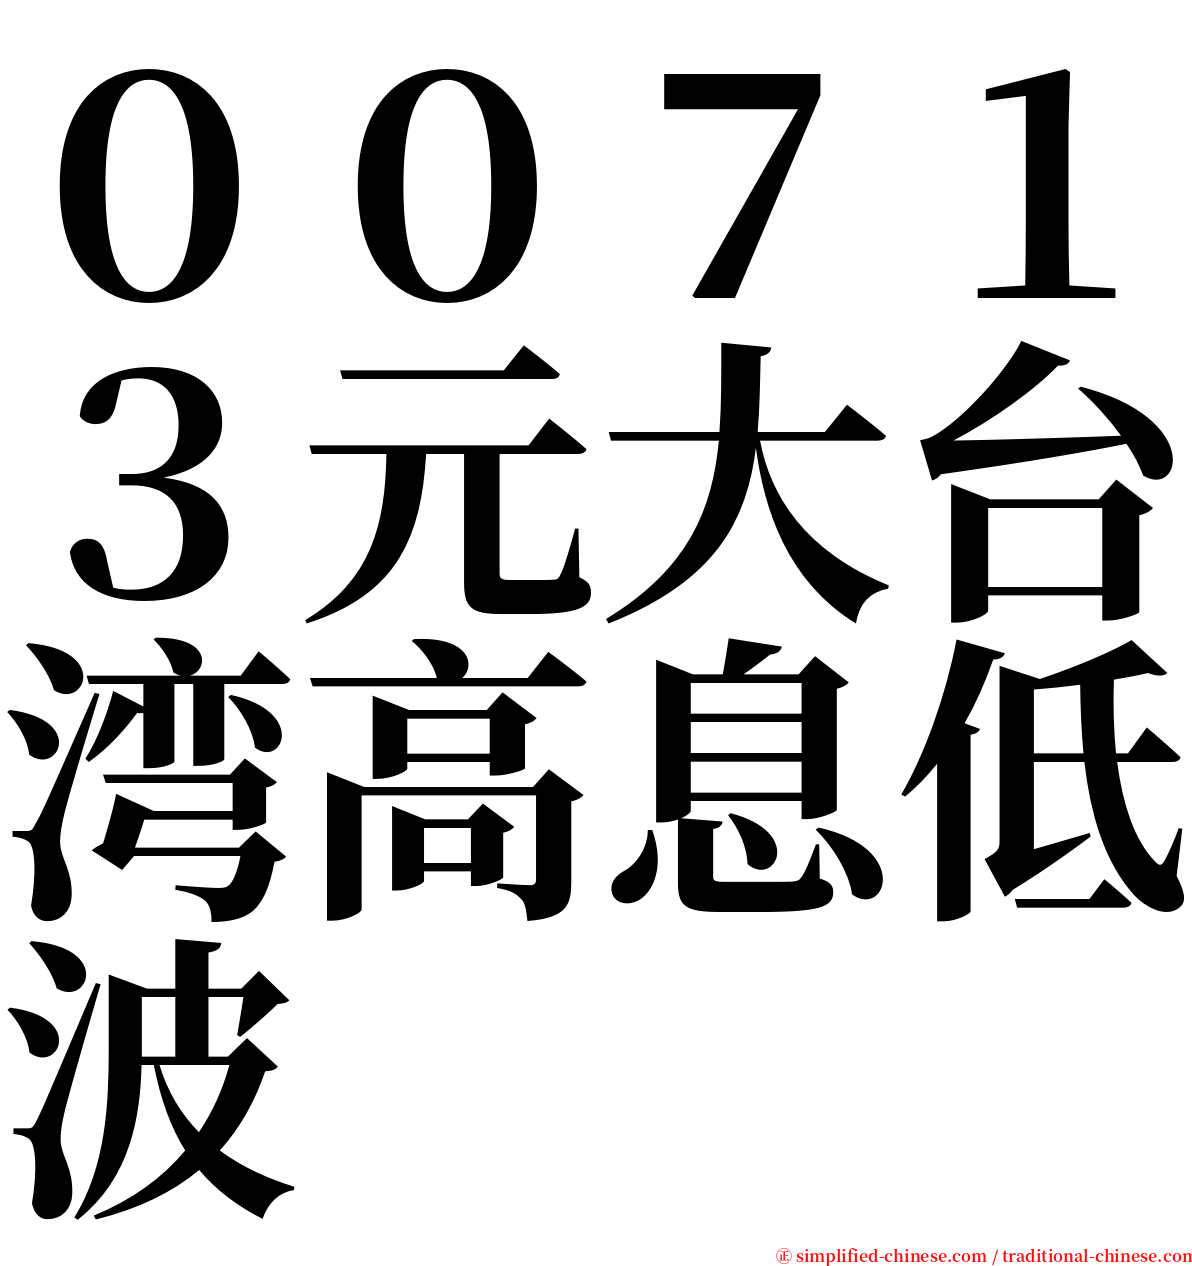 ００７１３元大台湾高息低波 serif font